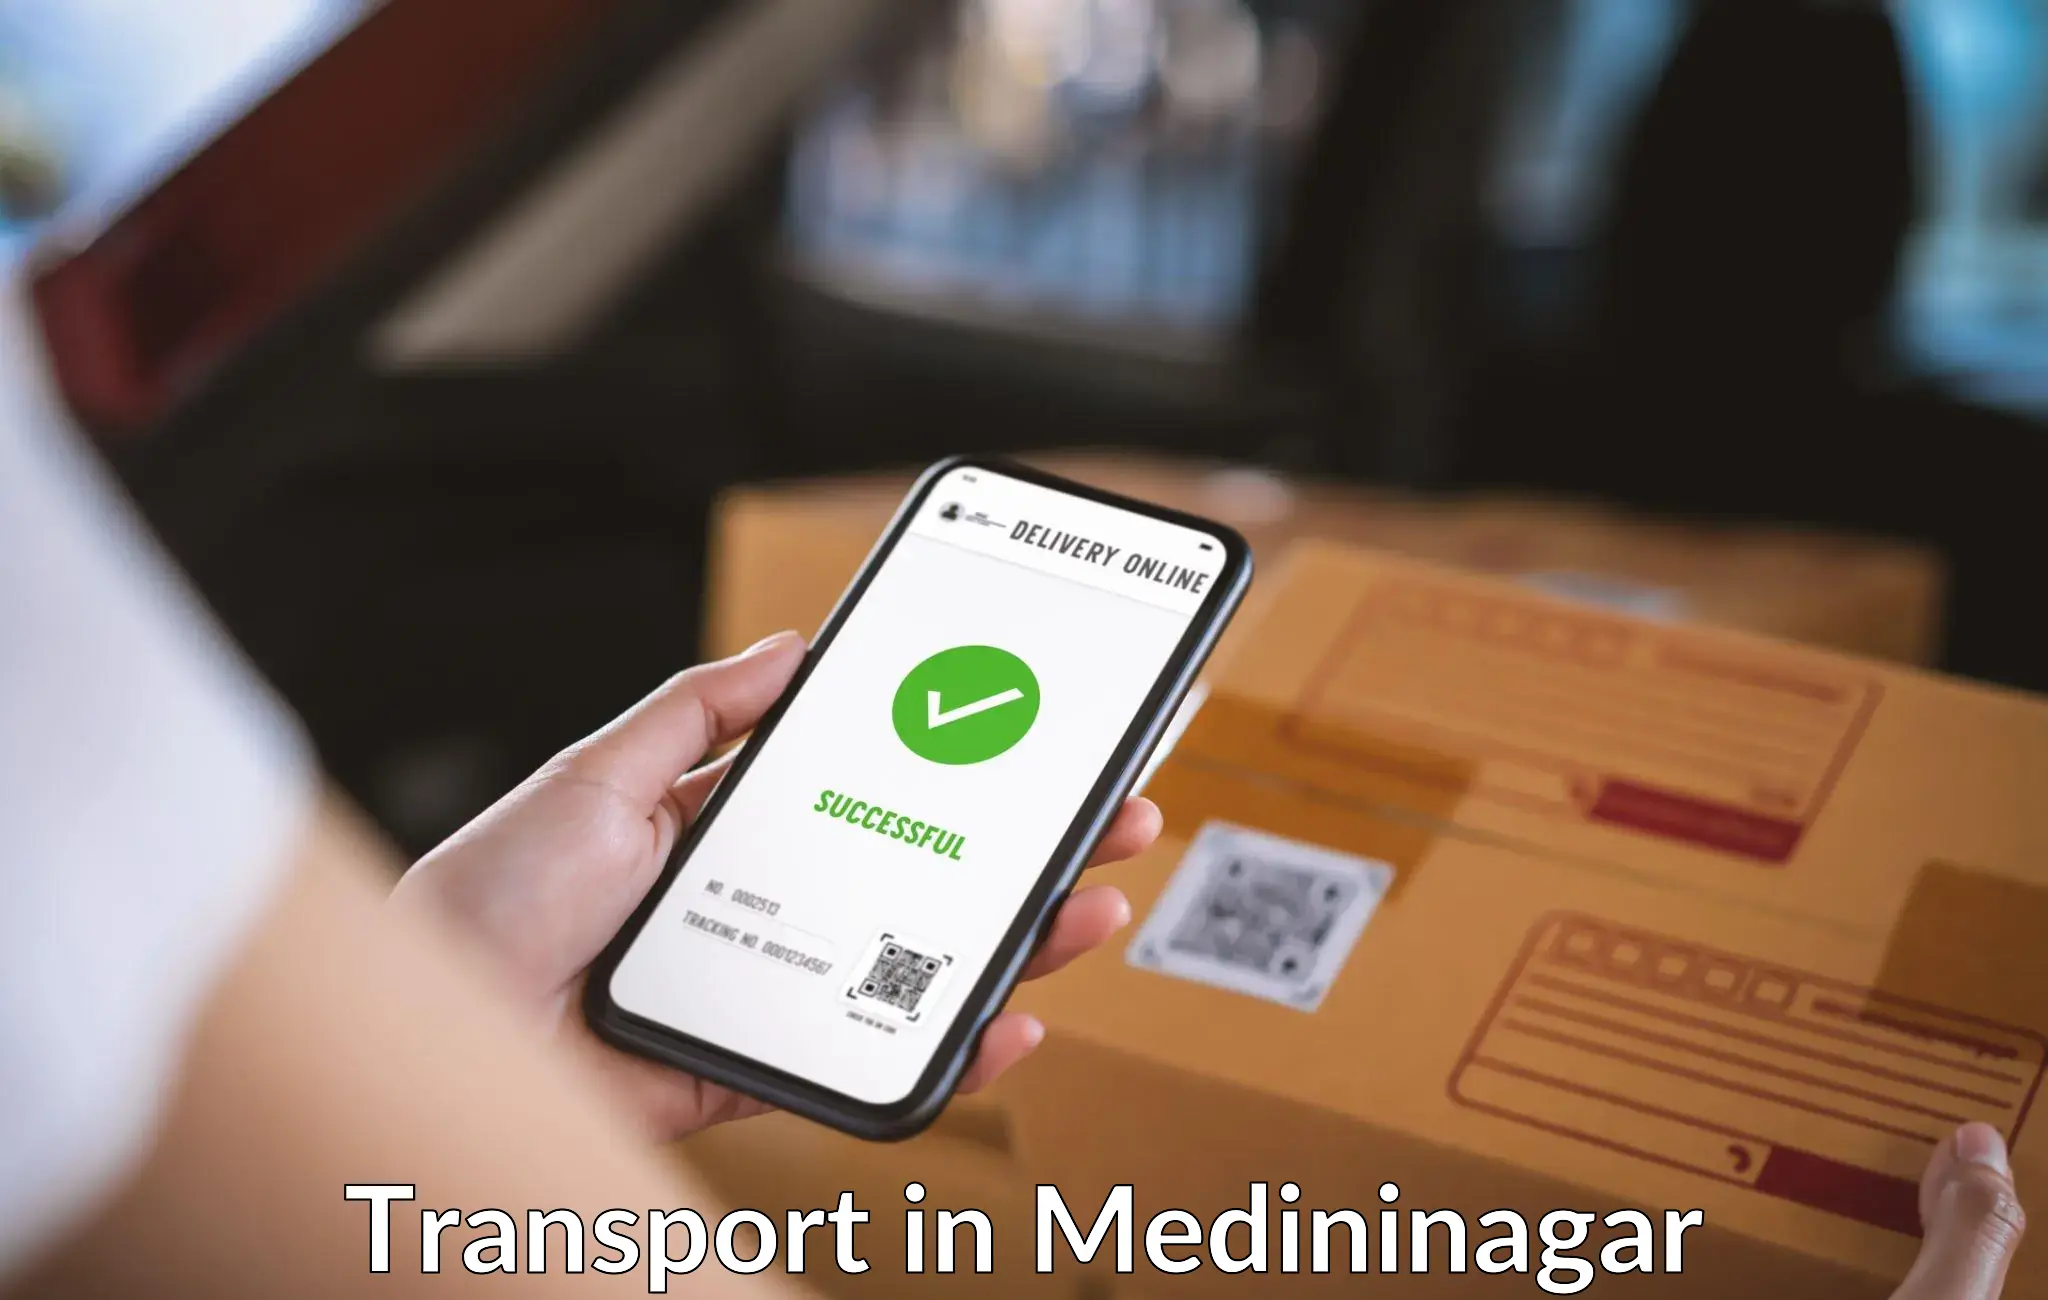 Transport services in Medininagar